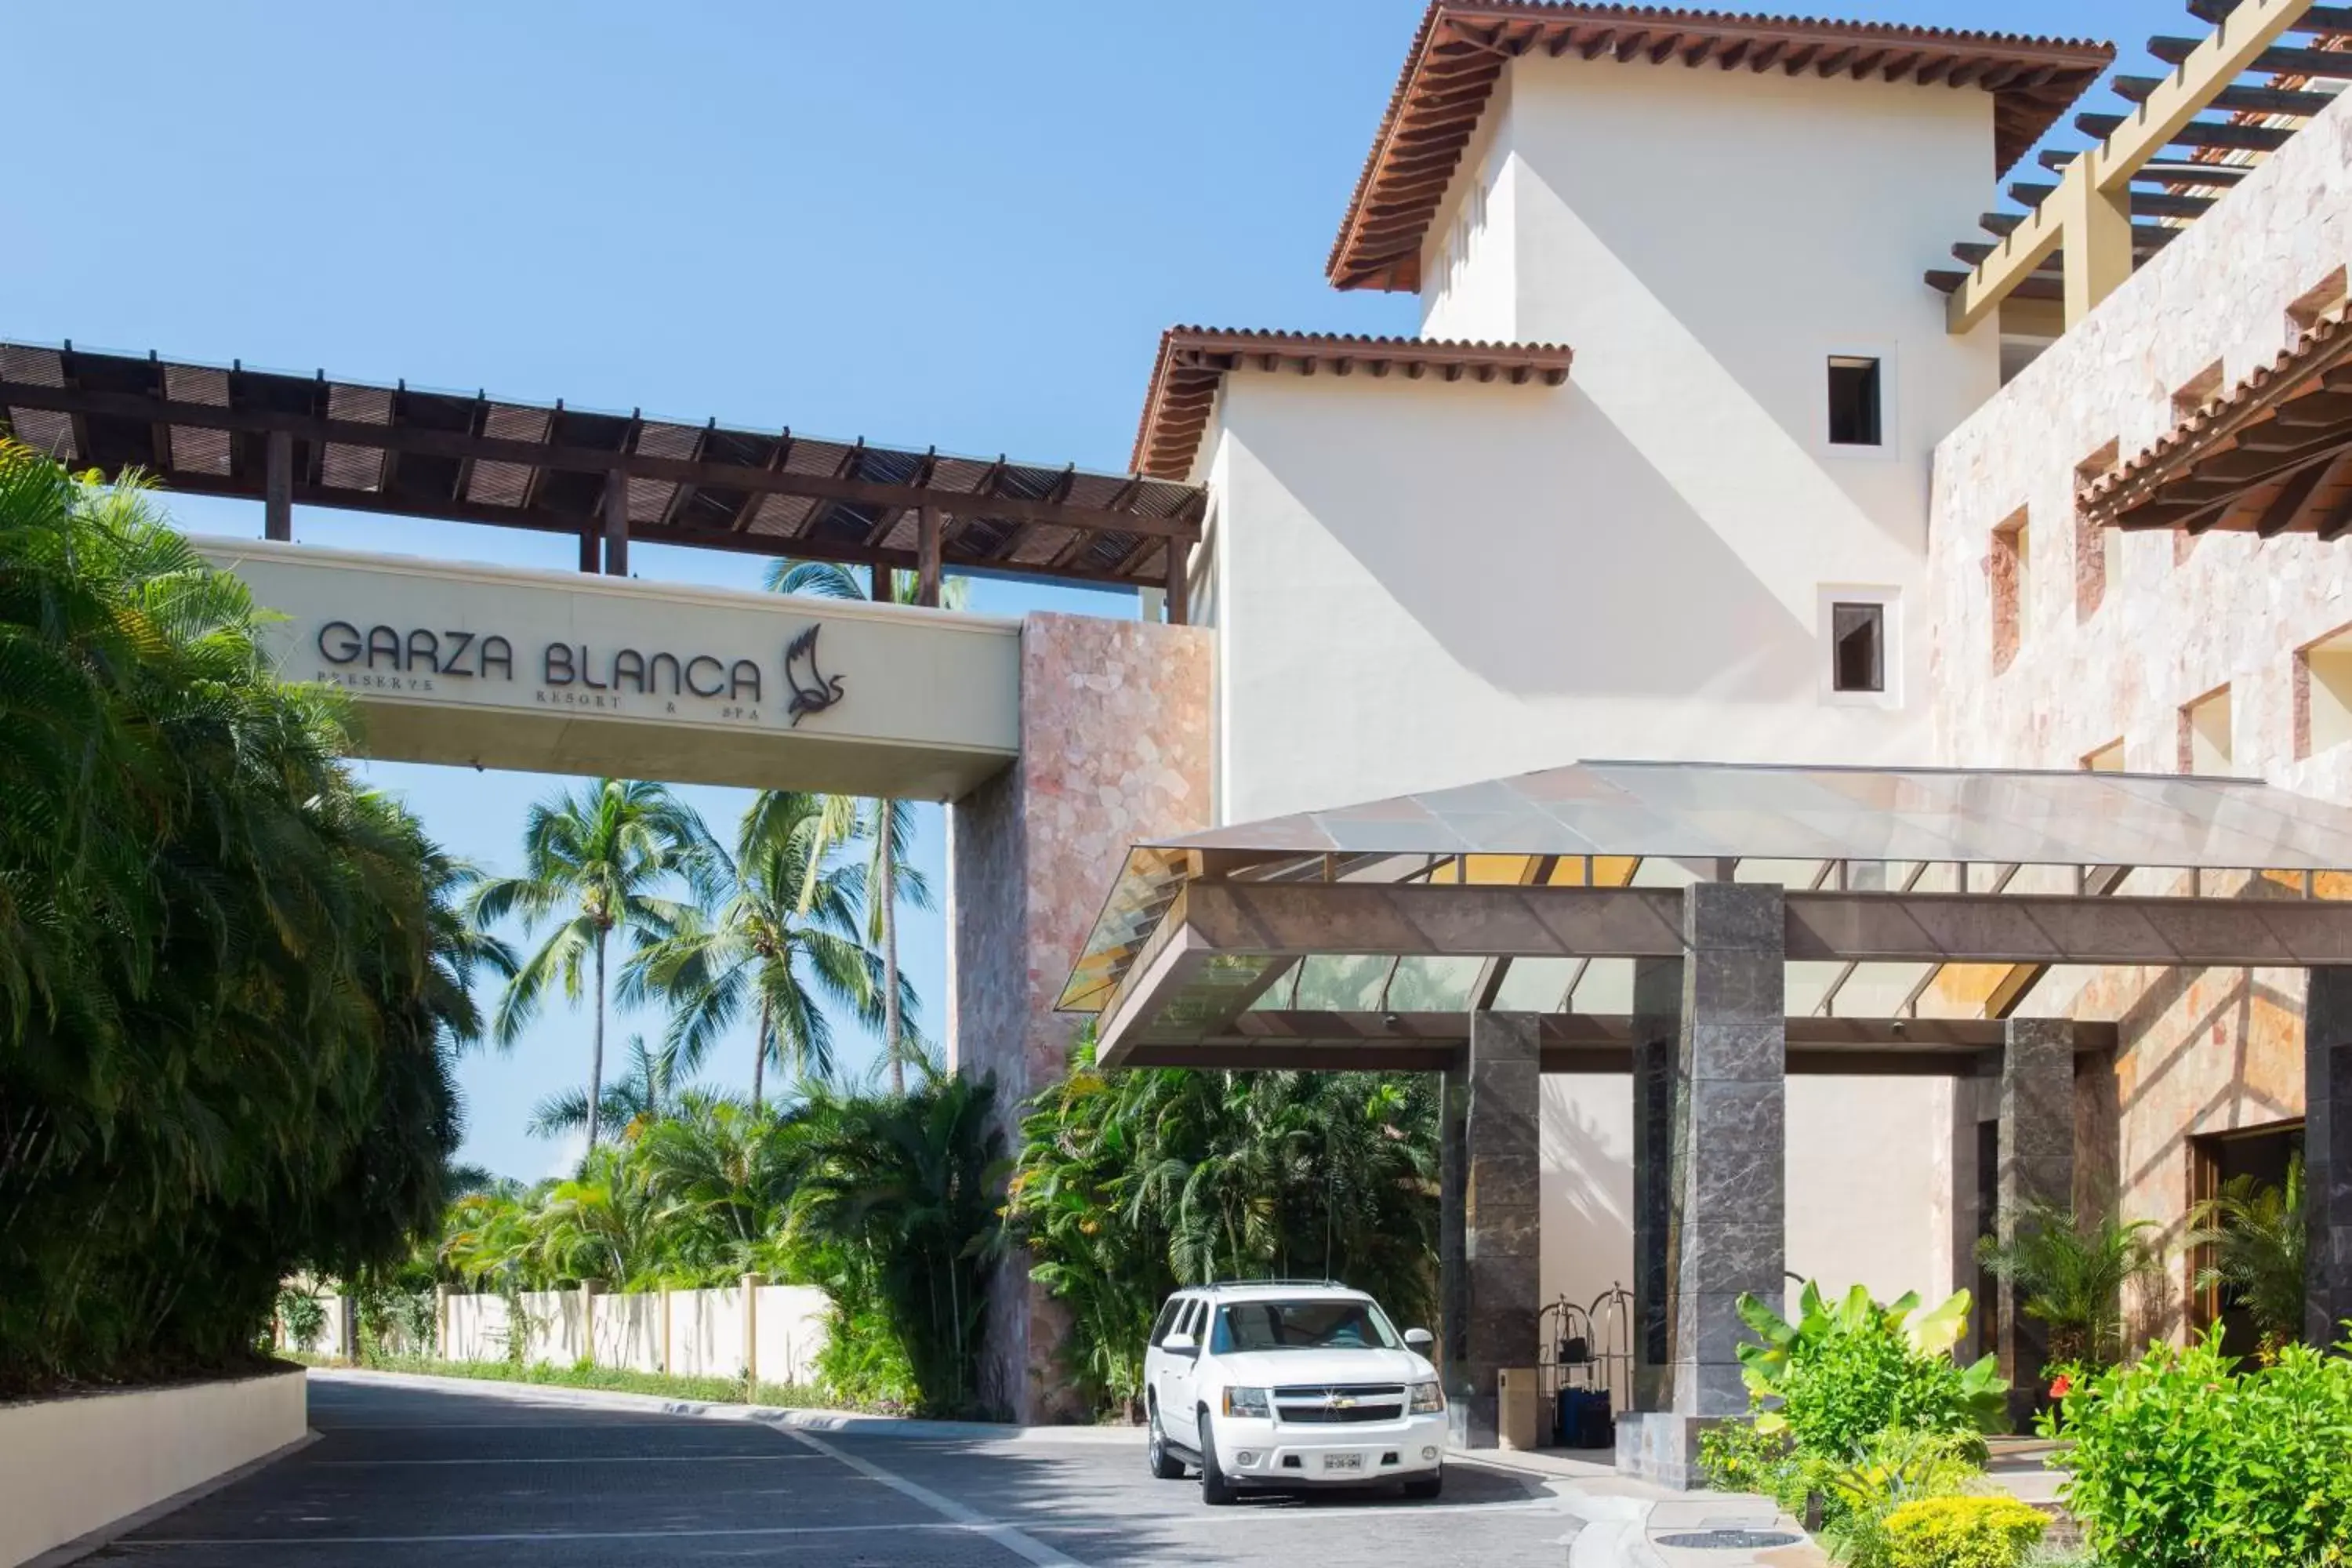 Facade/entrance, Property Building in Garza Blanca Preserve Resort & Spa